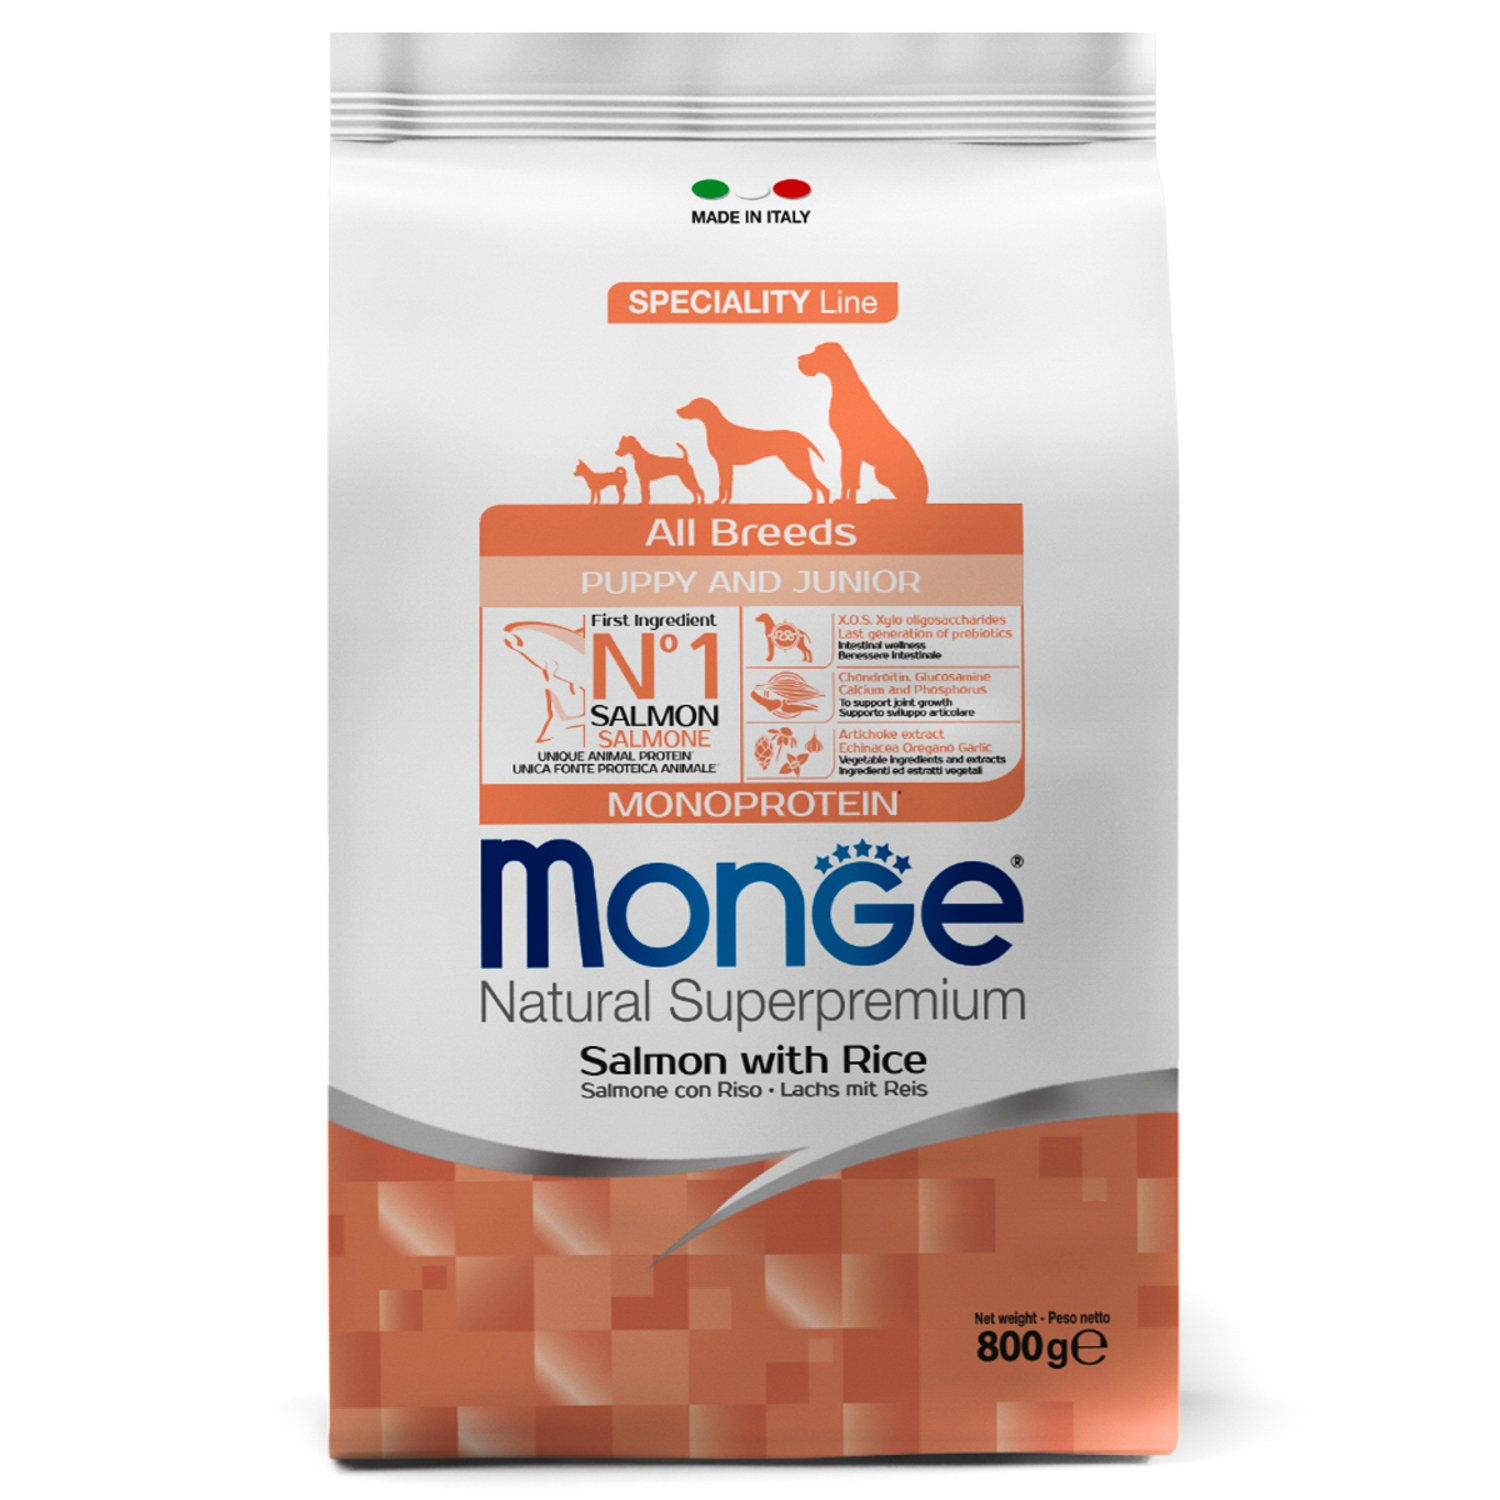 Сухой корм Monge Dog Speciality Line Puppy&Junior корм для щенков всех пород, из лосося с рисом 800 г